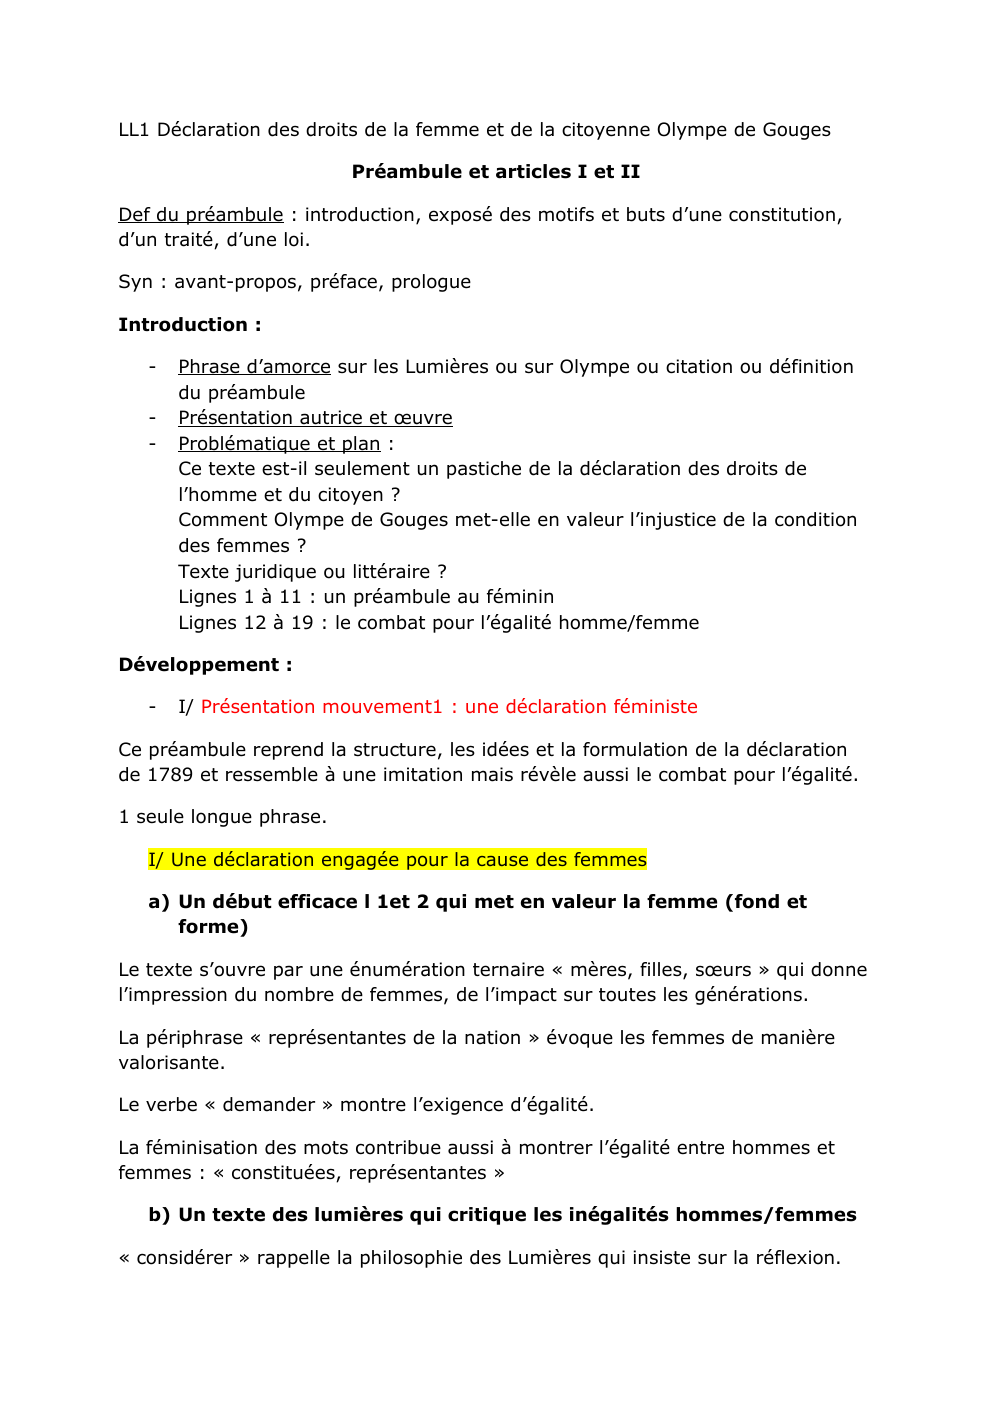 Prévisualisation du document LL1 Déclaration des droits de la femme et de la citoyenne Olympe de Gouges Préambule et articles I et II